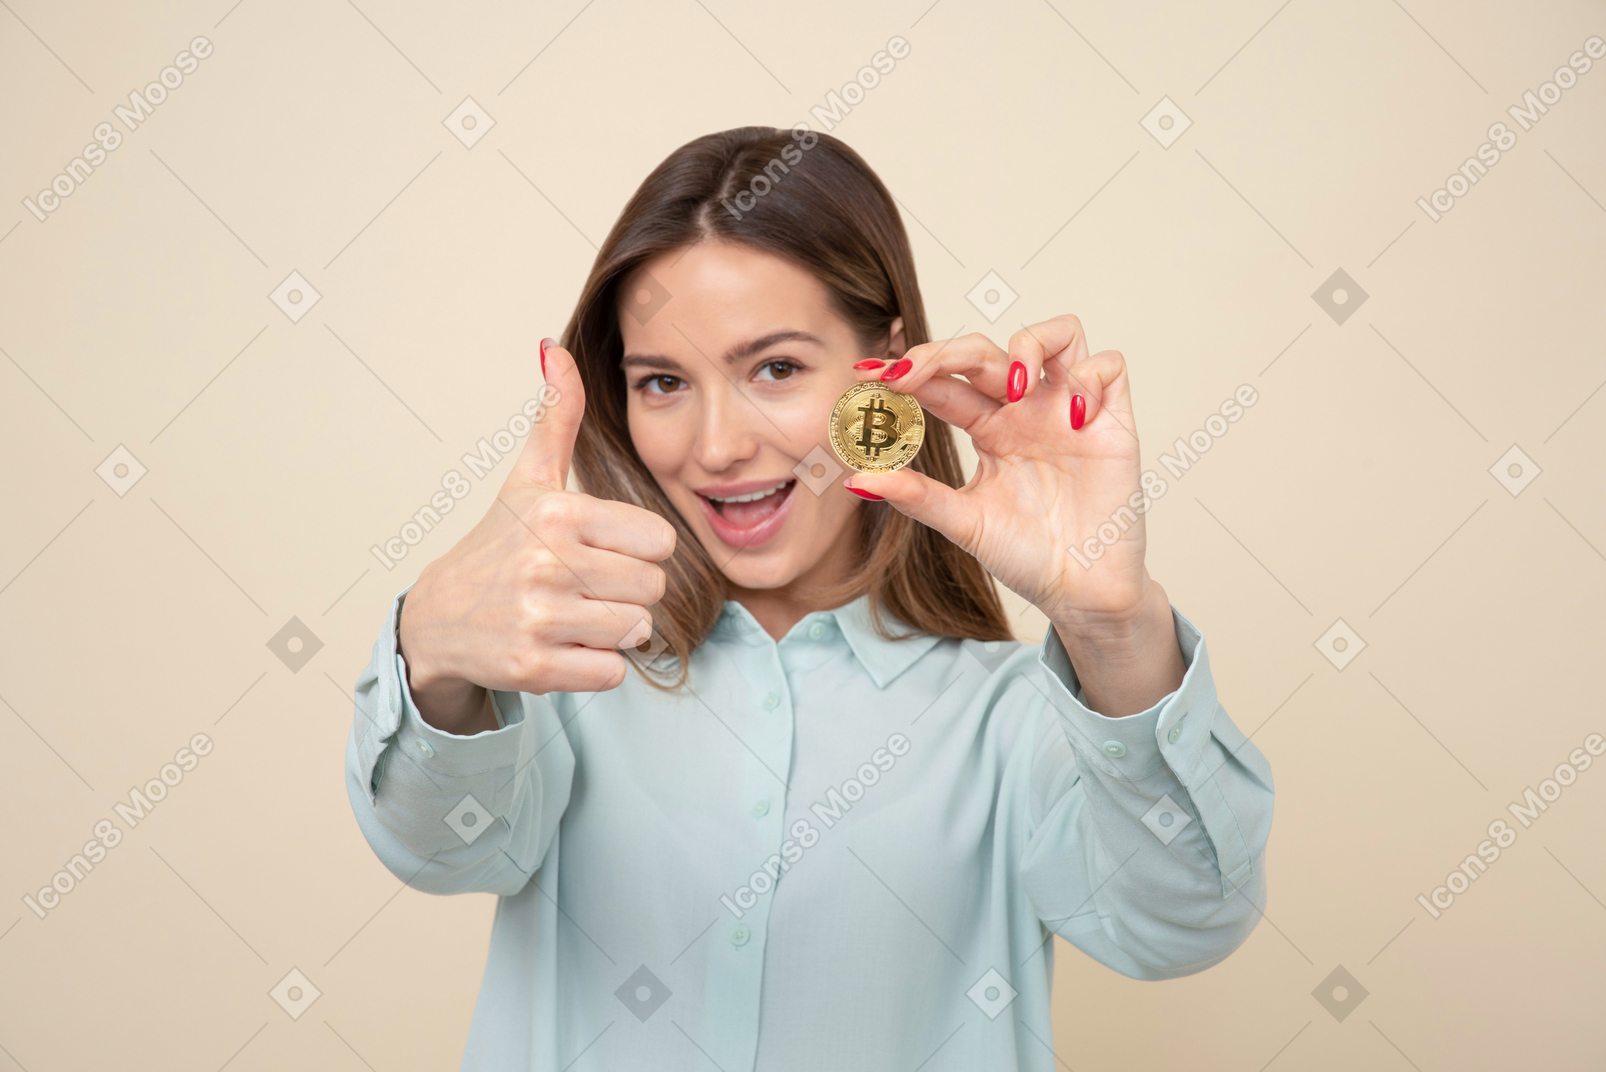 Bitcoin 및 엄지 손가락을 보여주는 매력적인 젊은 여자